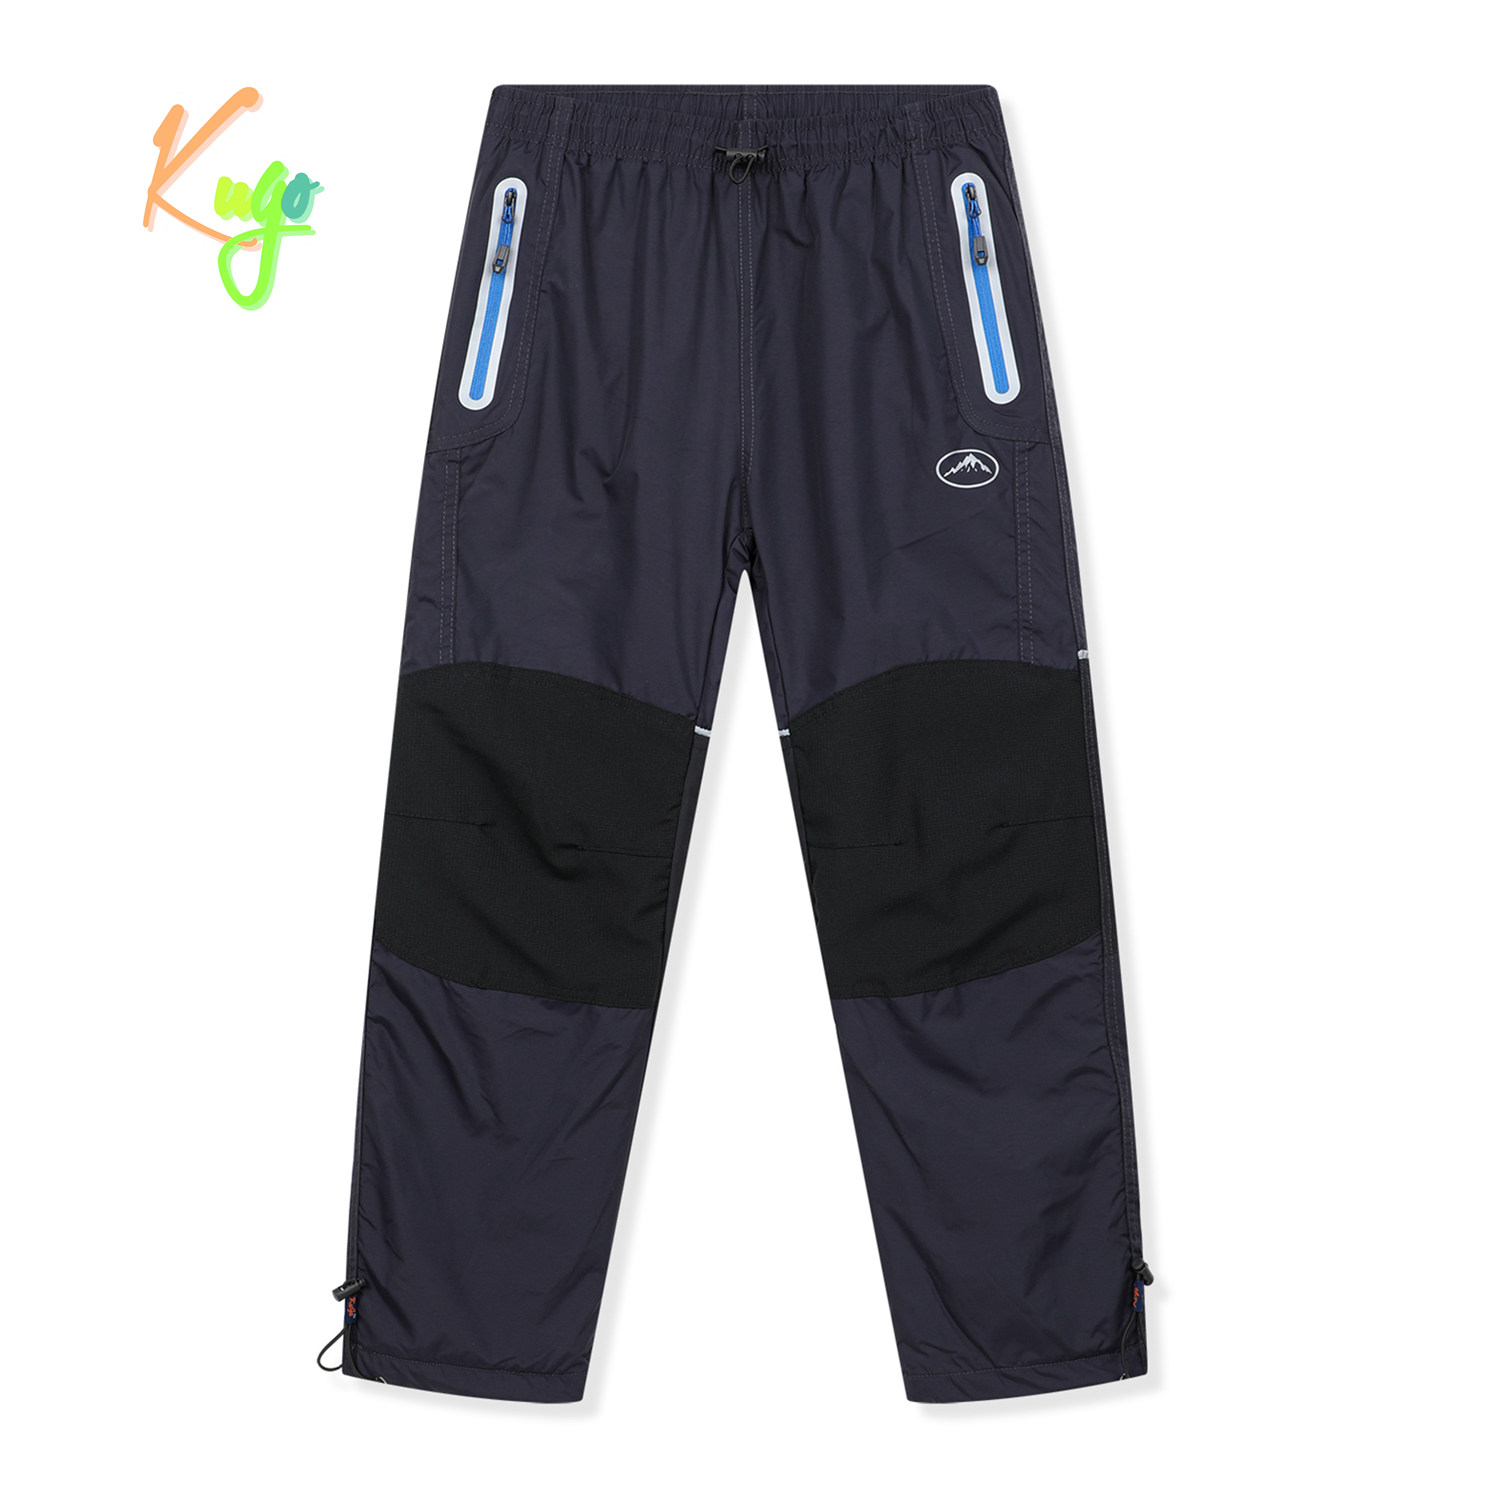 Chlapecké šusťákové kalhoty, zateplené - KUGO DK8237, šedomodrá / modré zipy Barva: Šedá, Velikost: 158